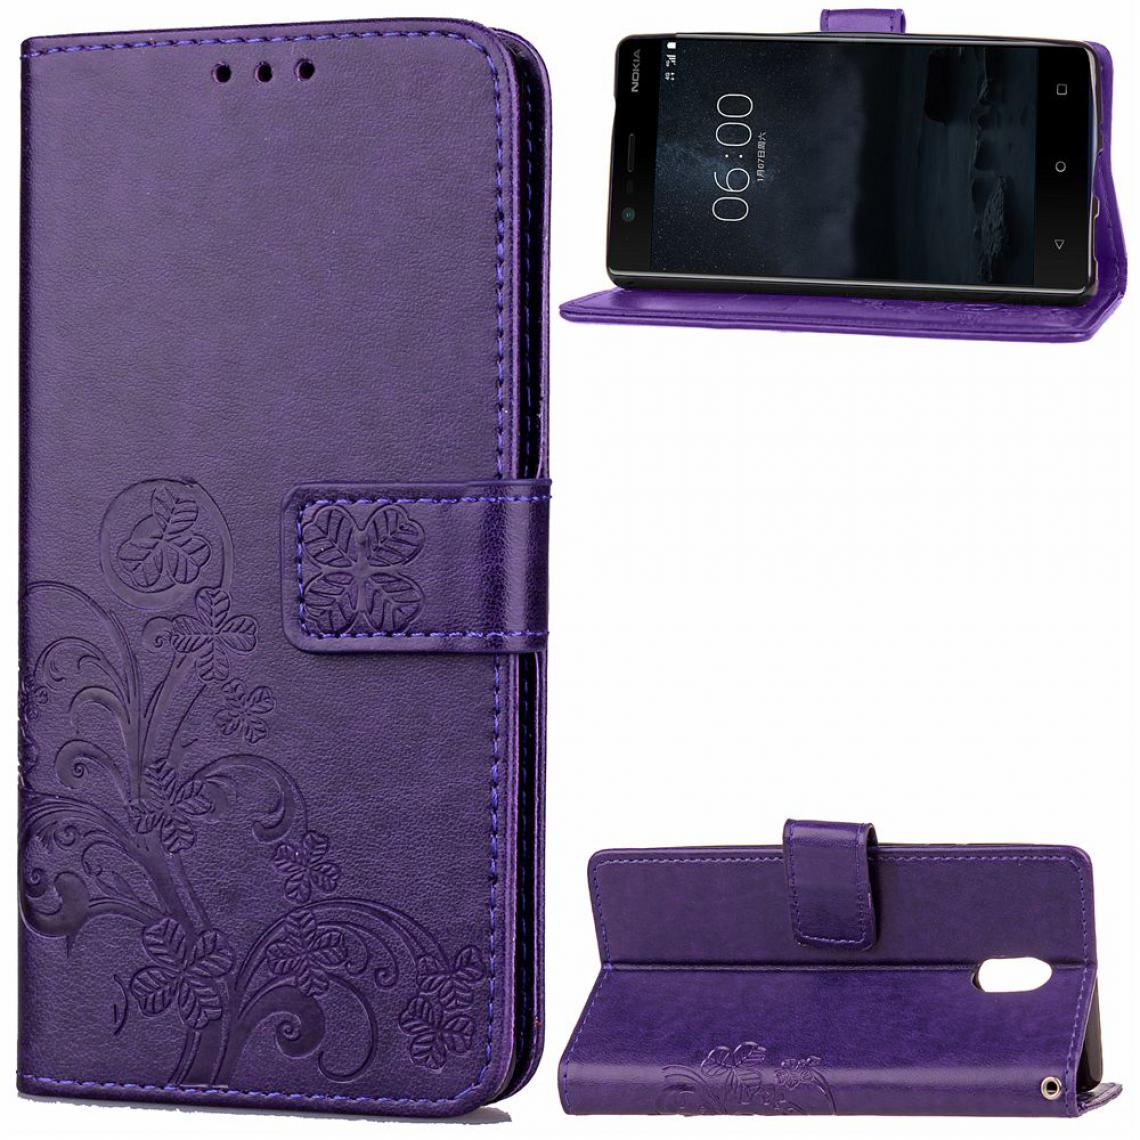 OtterBox - Nokia 3 Housse Etui Coque de protection type portefeuille (lys) [Violet] - Coque, étui smartphone